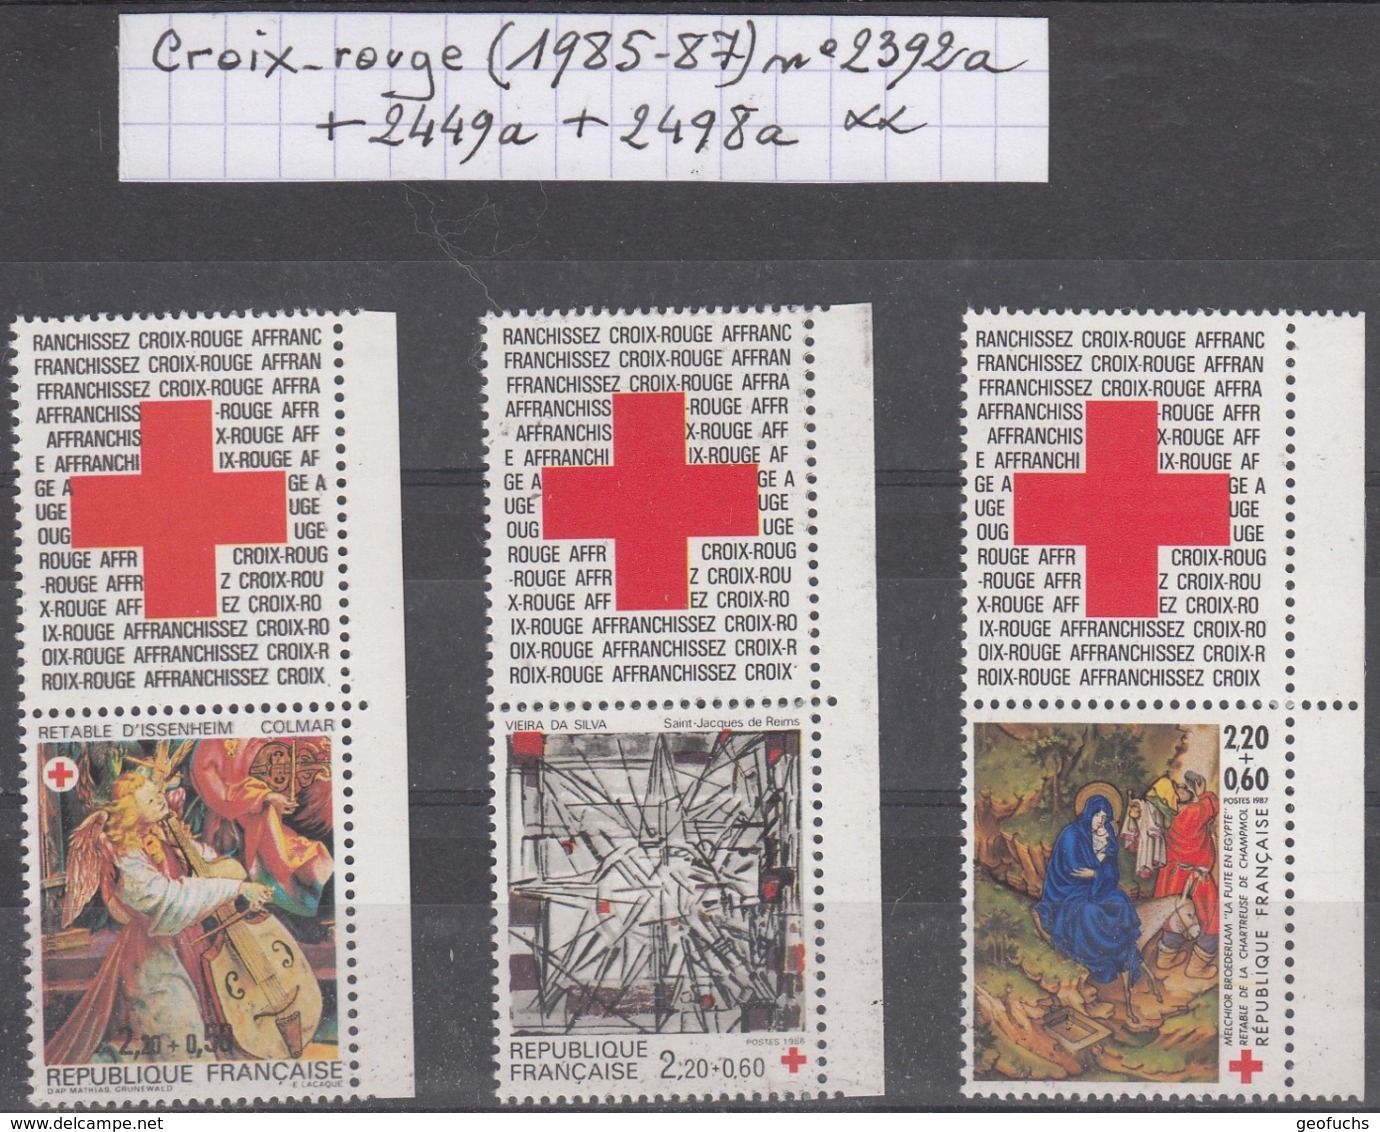 France Croix-rouge (1985-87) Y/T N° 2392a + 2449a + 2498a Avec Vignettes De Carnets Neufs ** - Neufs